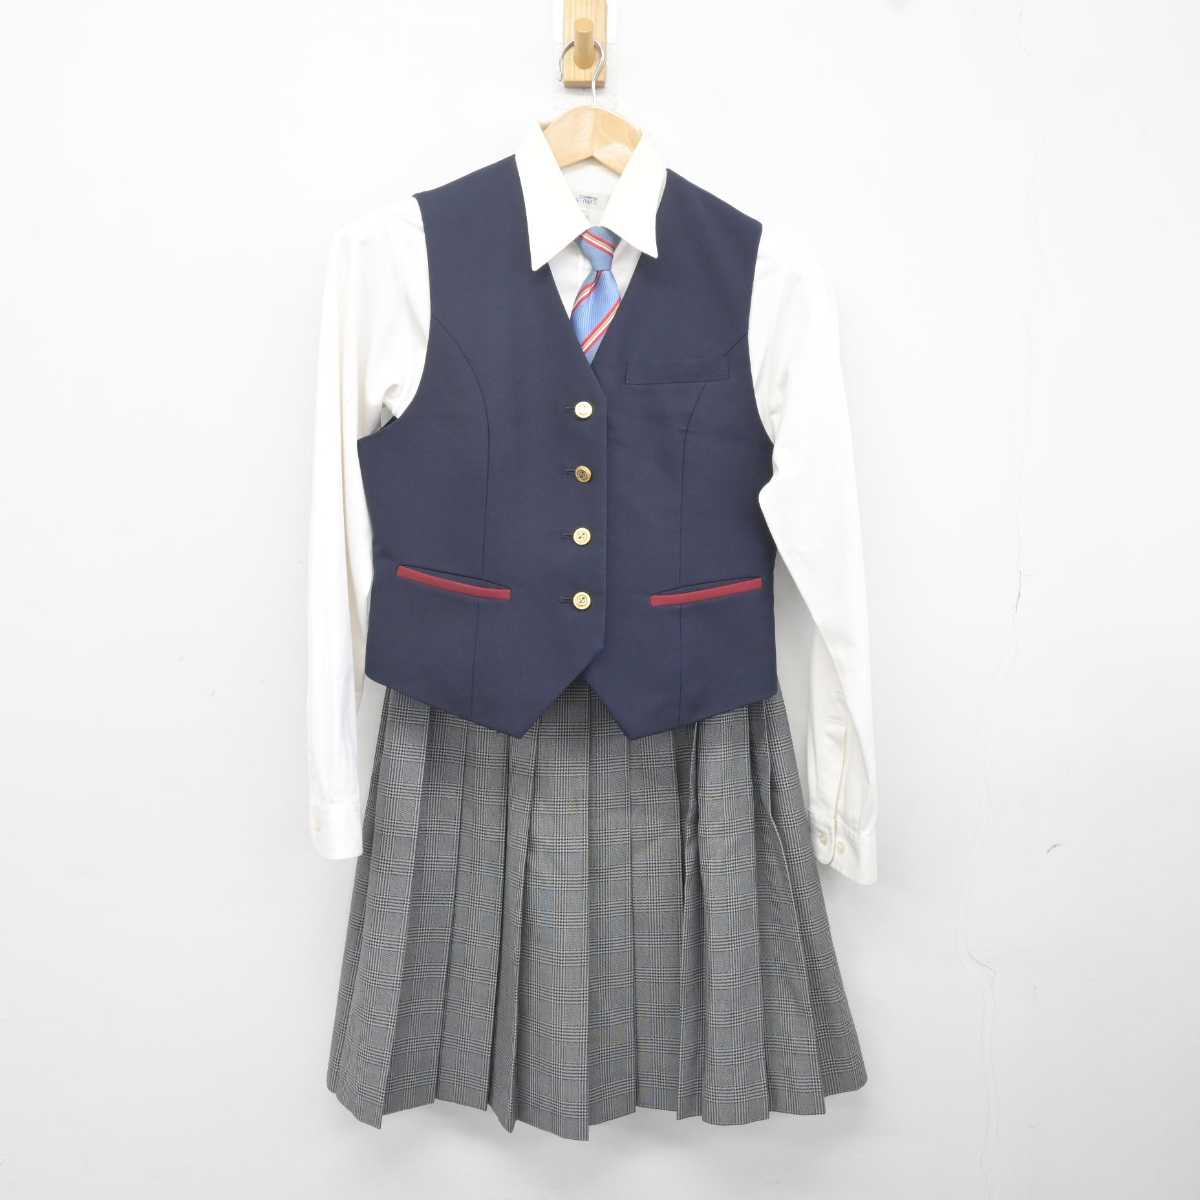 【割引直売】岡山 東商業高校 女子 学生服 ブレザー スカート 学生服